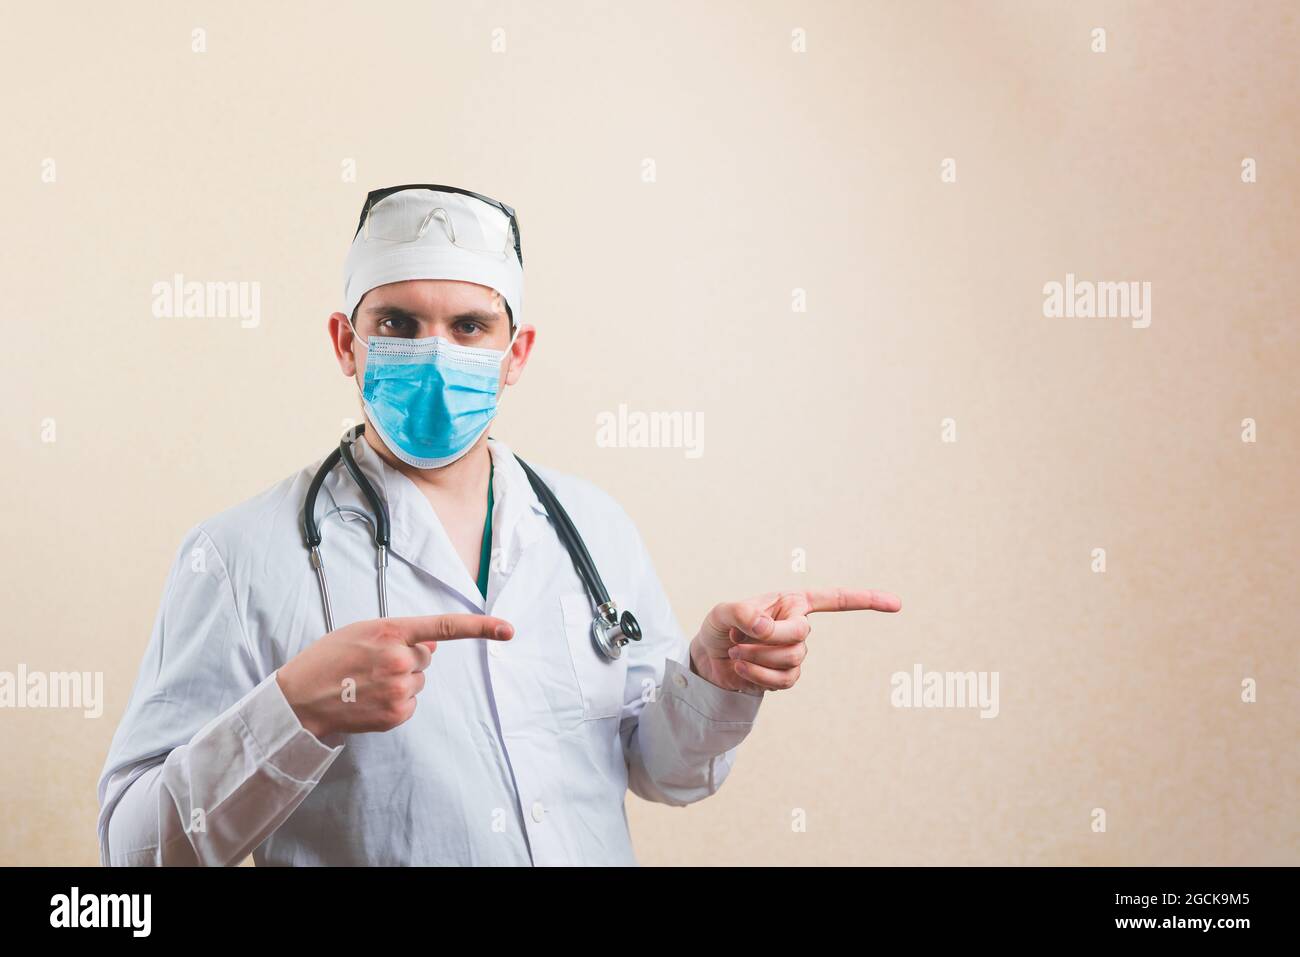 Retrato del joven doctor en traje blanco y gafas protectoras de máscara respiratoria y estetoscopio apuntando sus dedos hacia el copyspace aislado Foto de stock